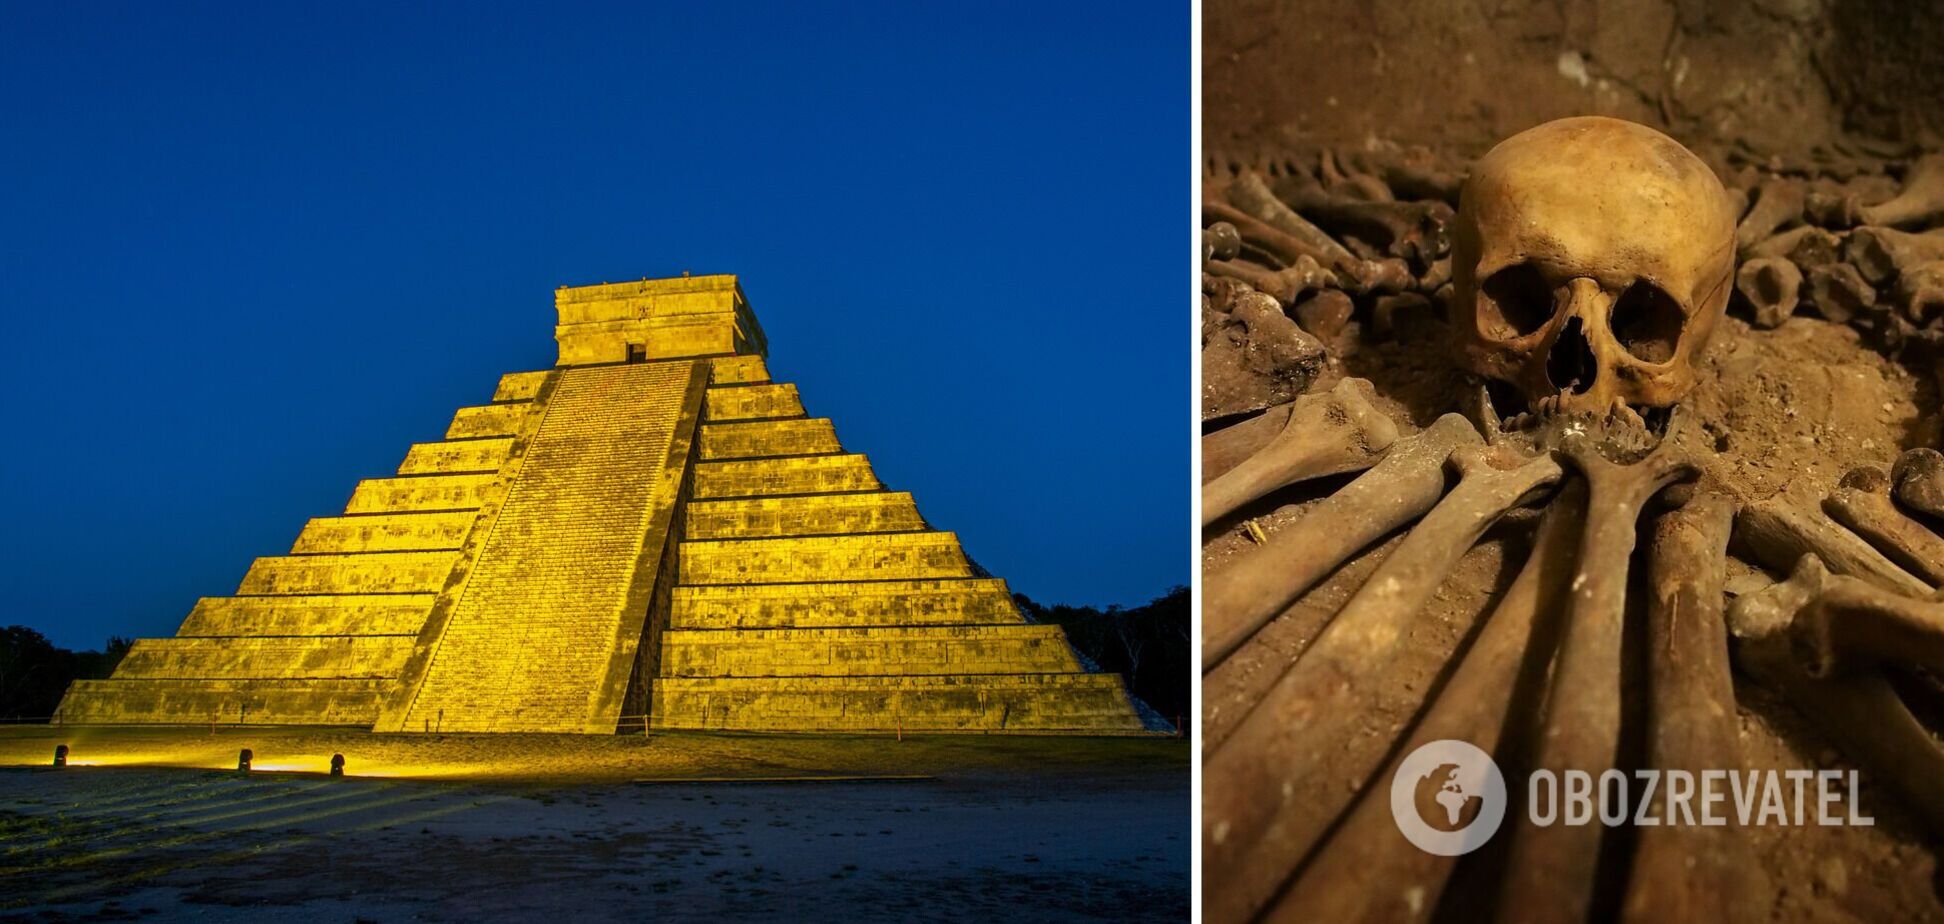 Цивилизация майя уничтожила сама себя? Ученые указали на роковую жажду знаменитой цивилизации